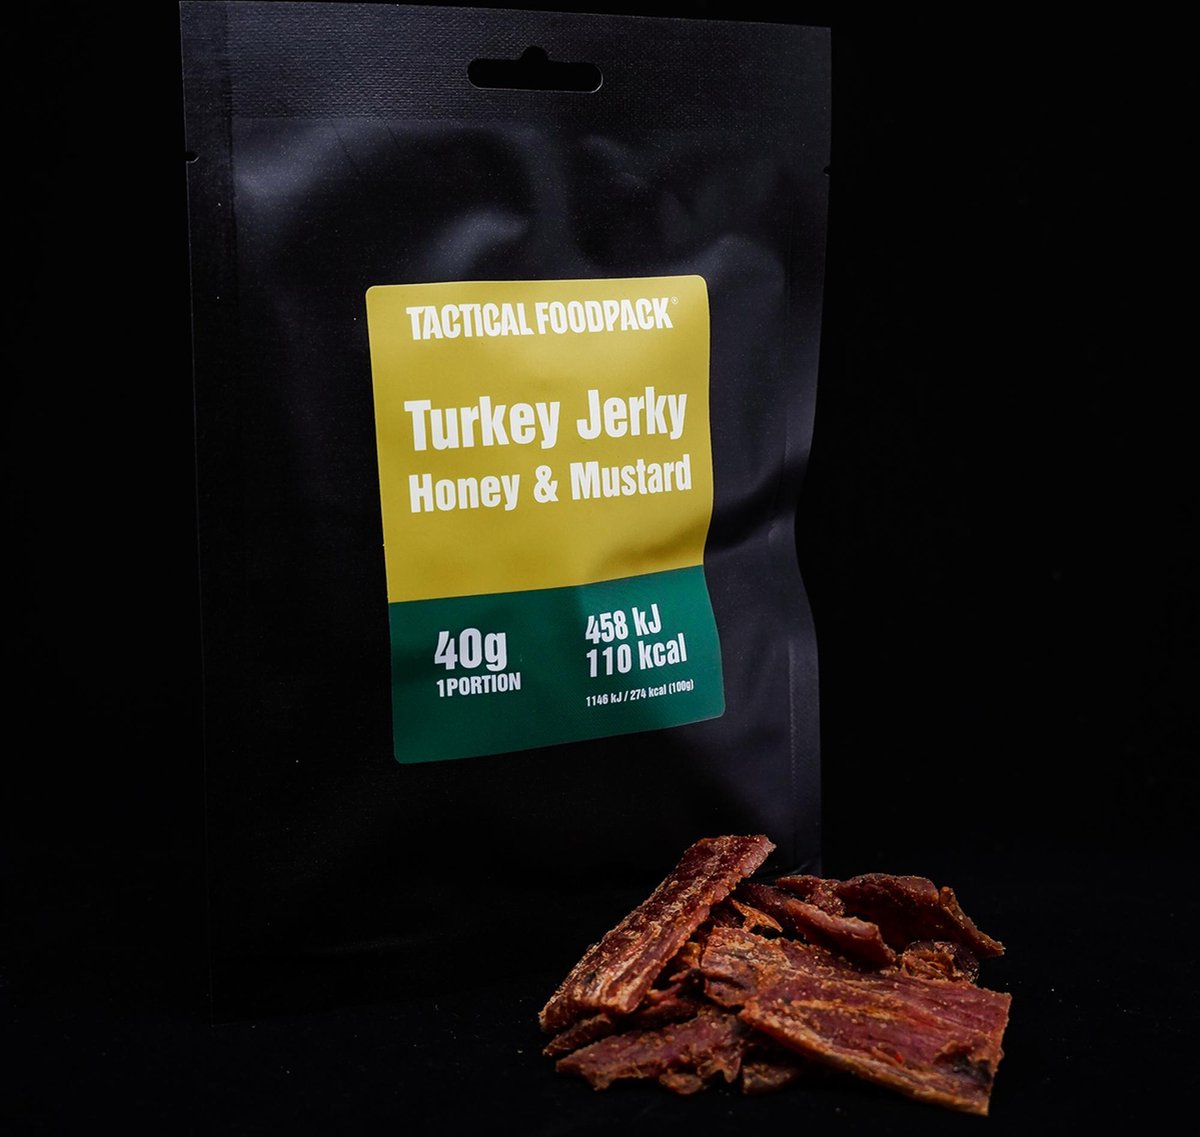 Tactical Foodpack Turkey Jerky Honey & mustard - 40g - kalkoenvlees - honing en mosterd - outdoor snack - buiten eten - houdbaar - prepper - 3 jaar houdbaar